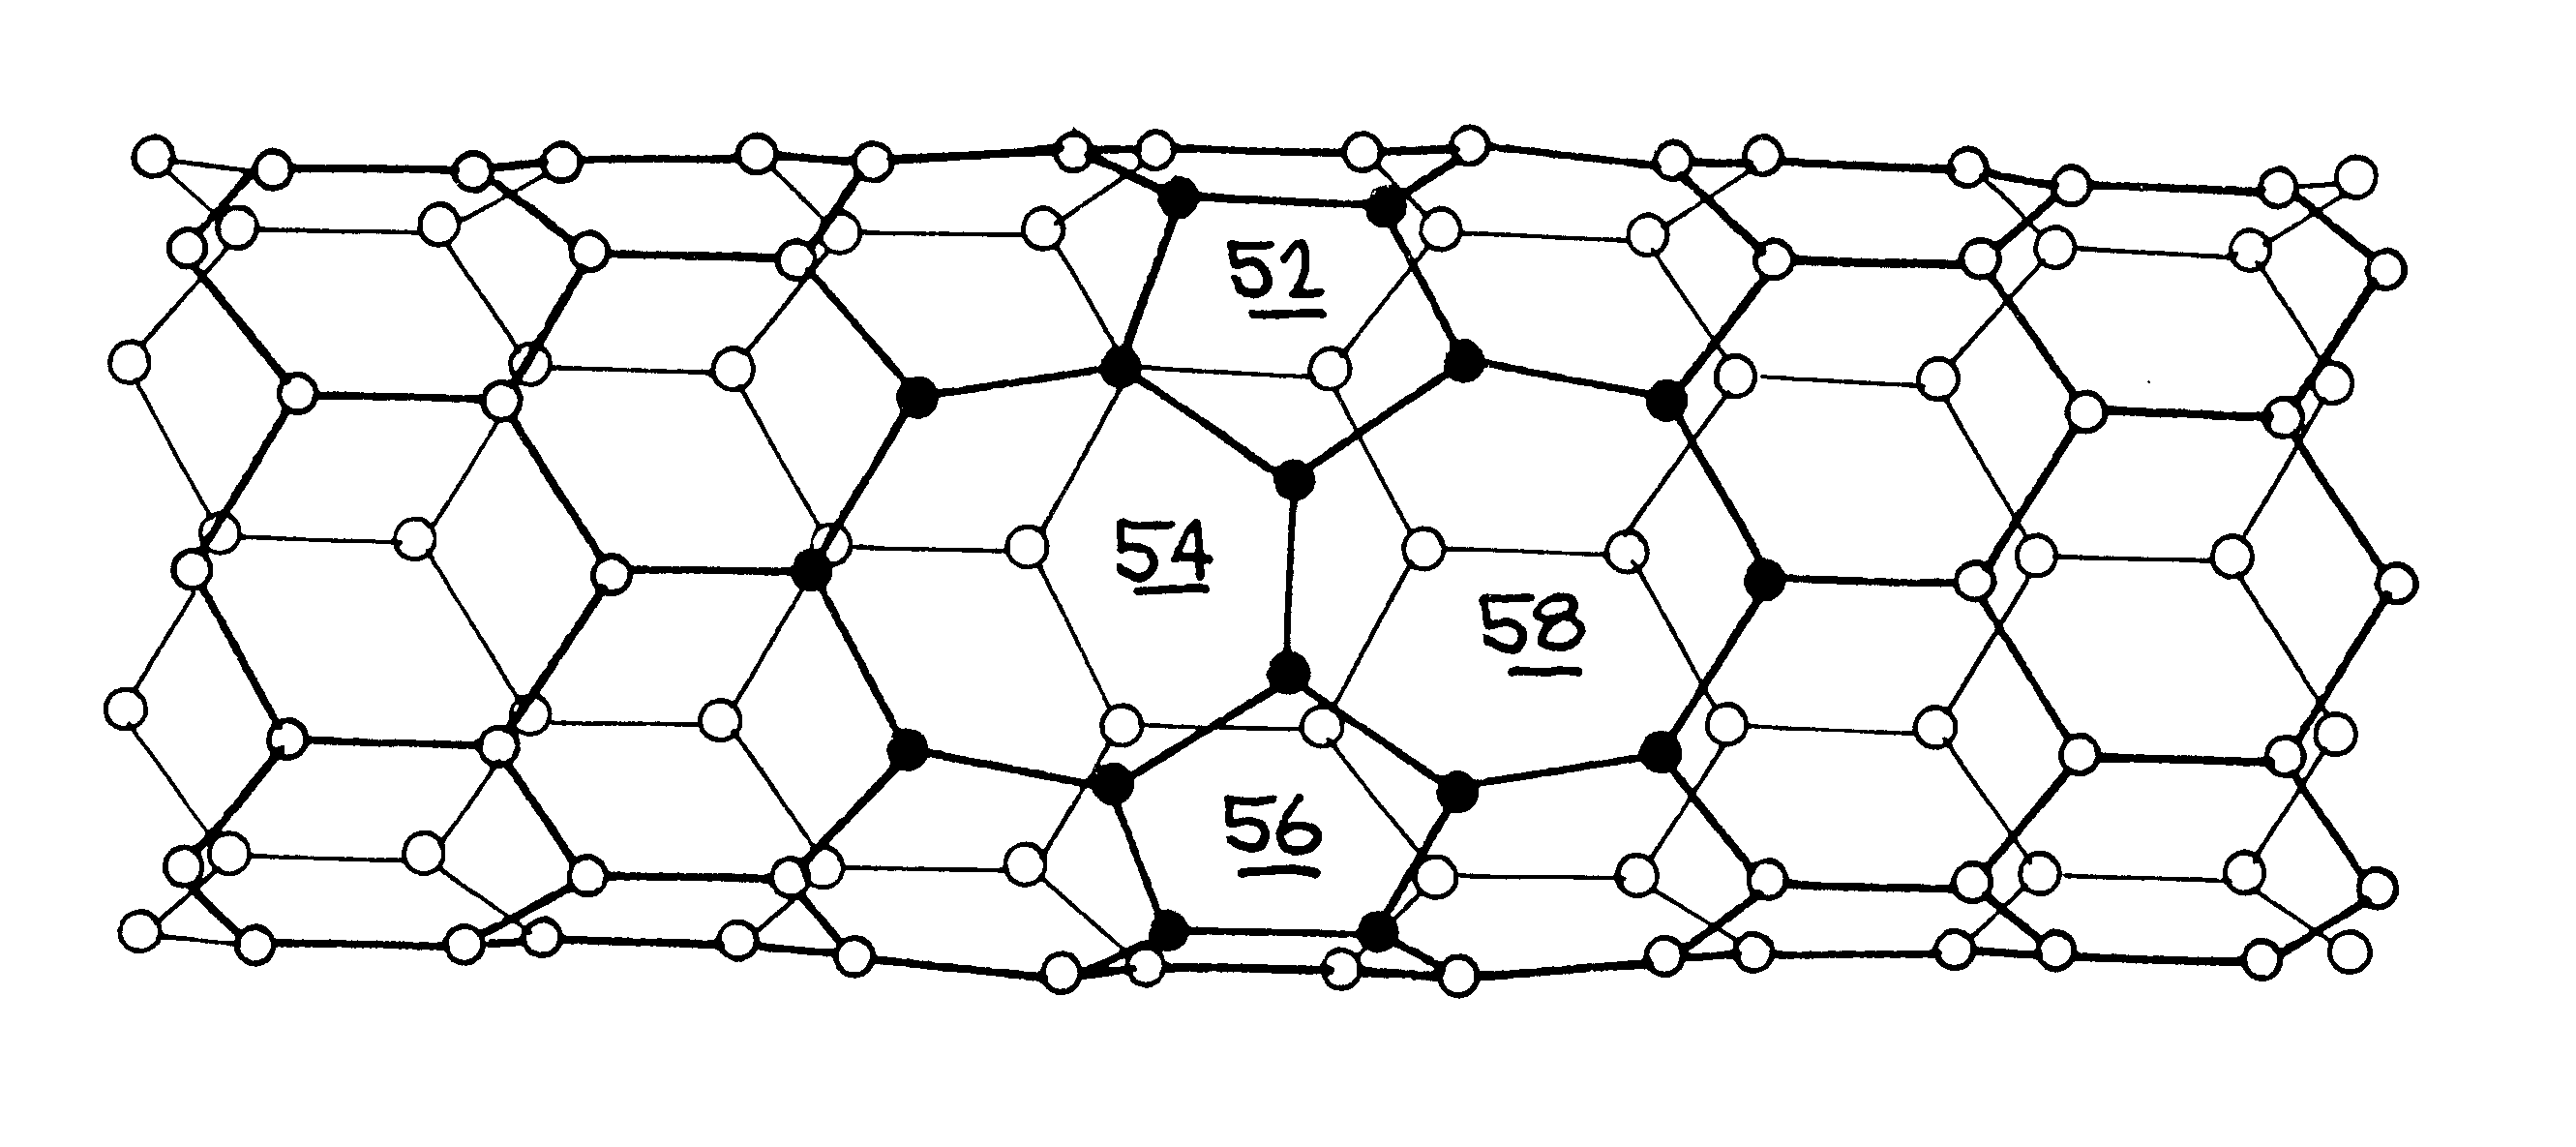 Nanotube junctions